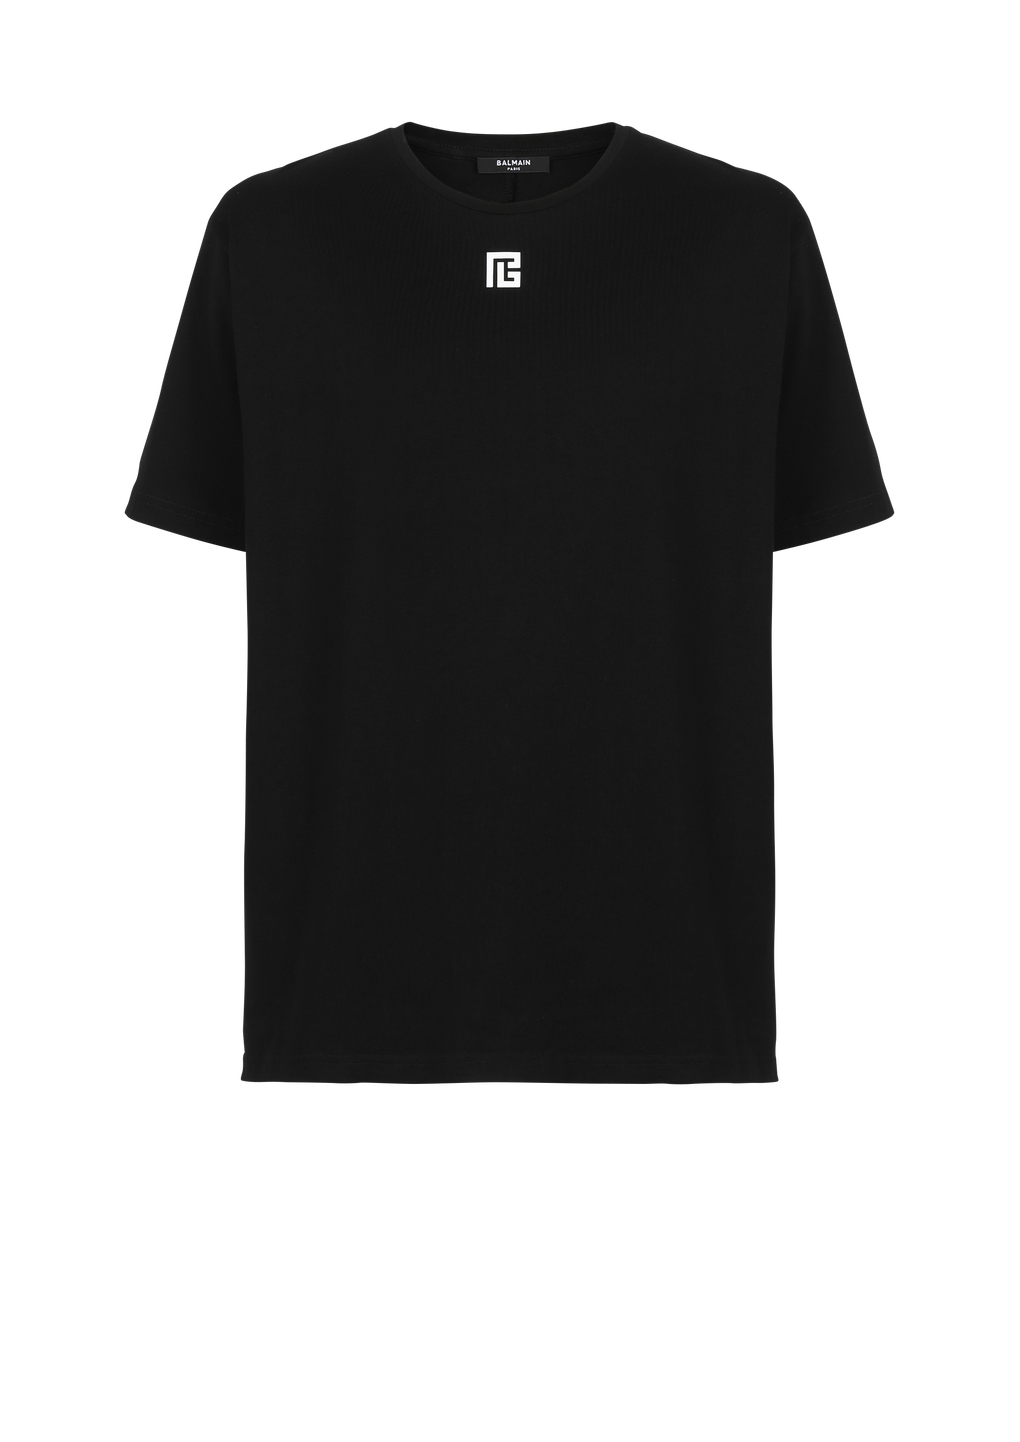 T-shirt oversize in cotone con maxi logo Balmain, nero, hi-res